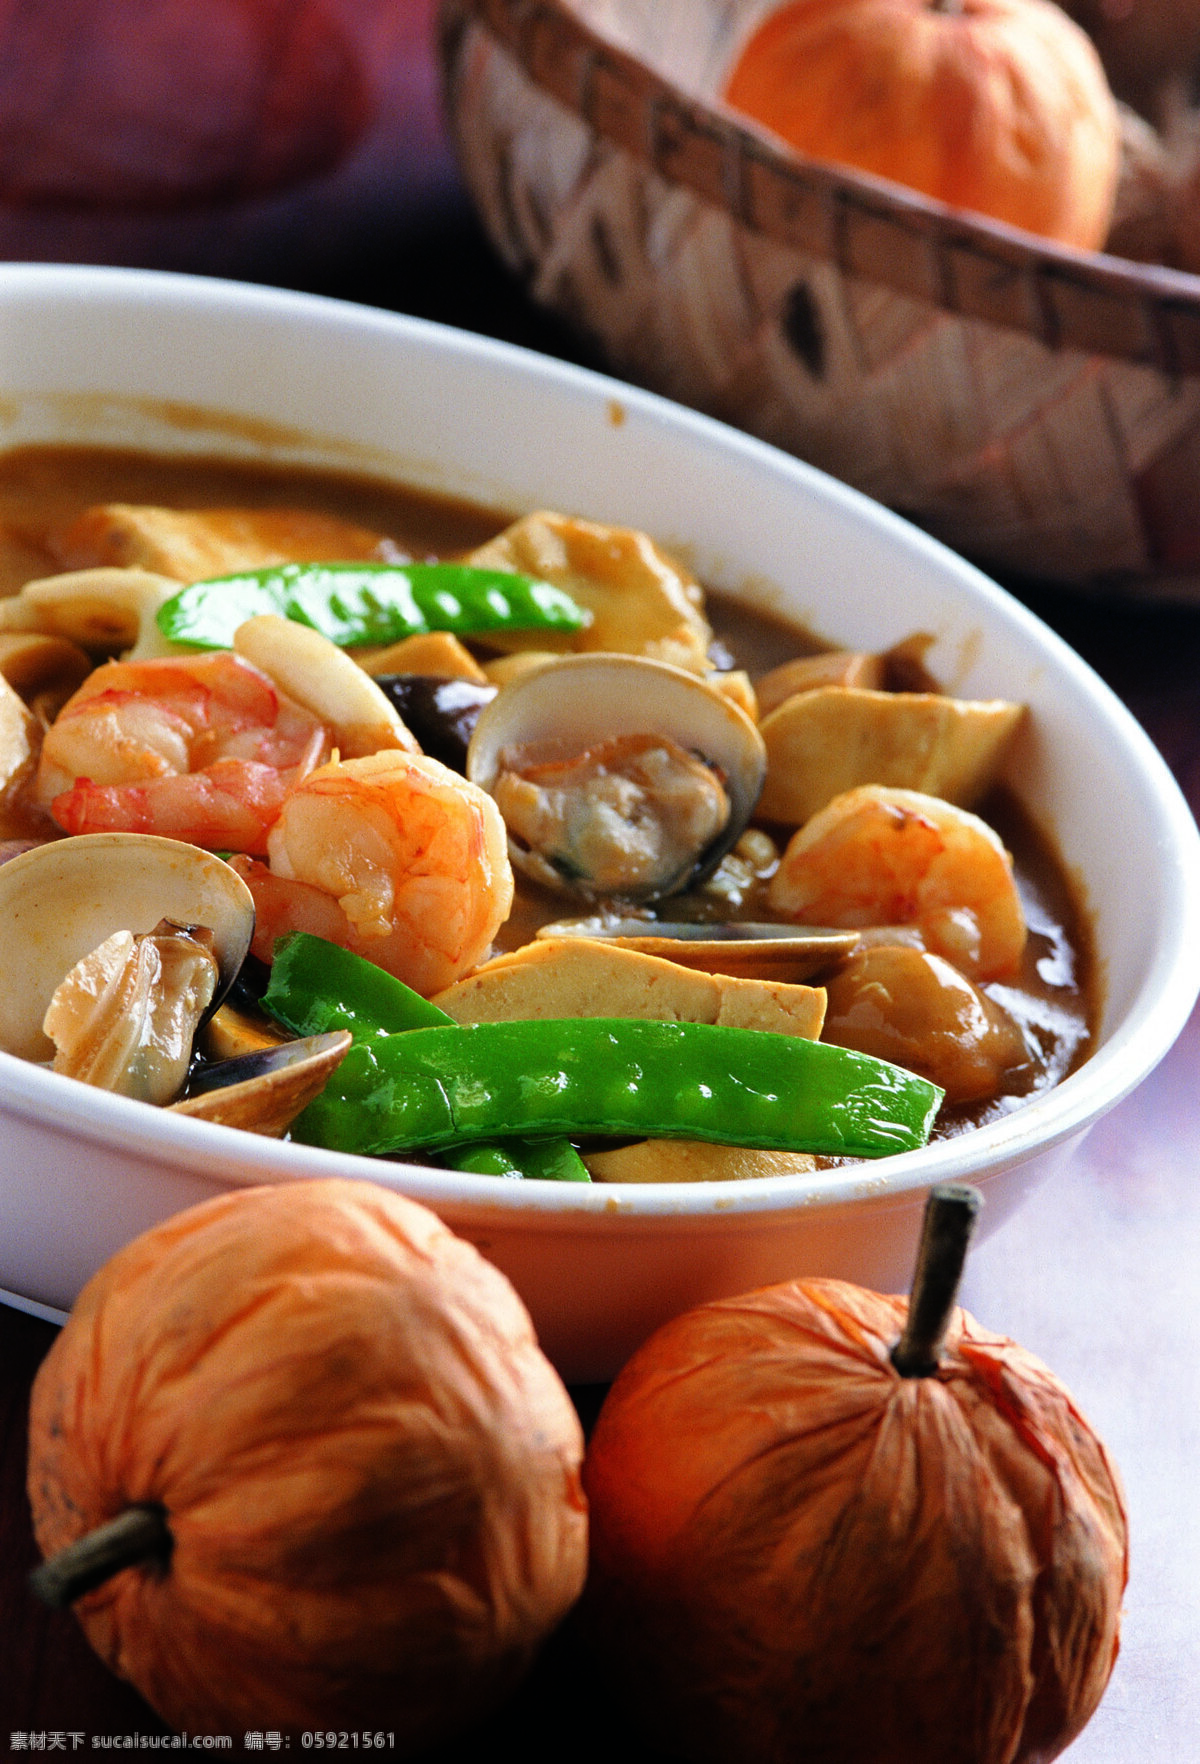 海鲜锅 唯美 食物 食品 美食 美味 营养 健康 海鲜 海味 餐饮美食 传统美食